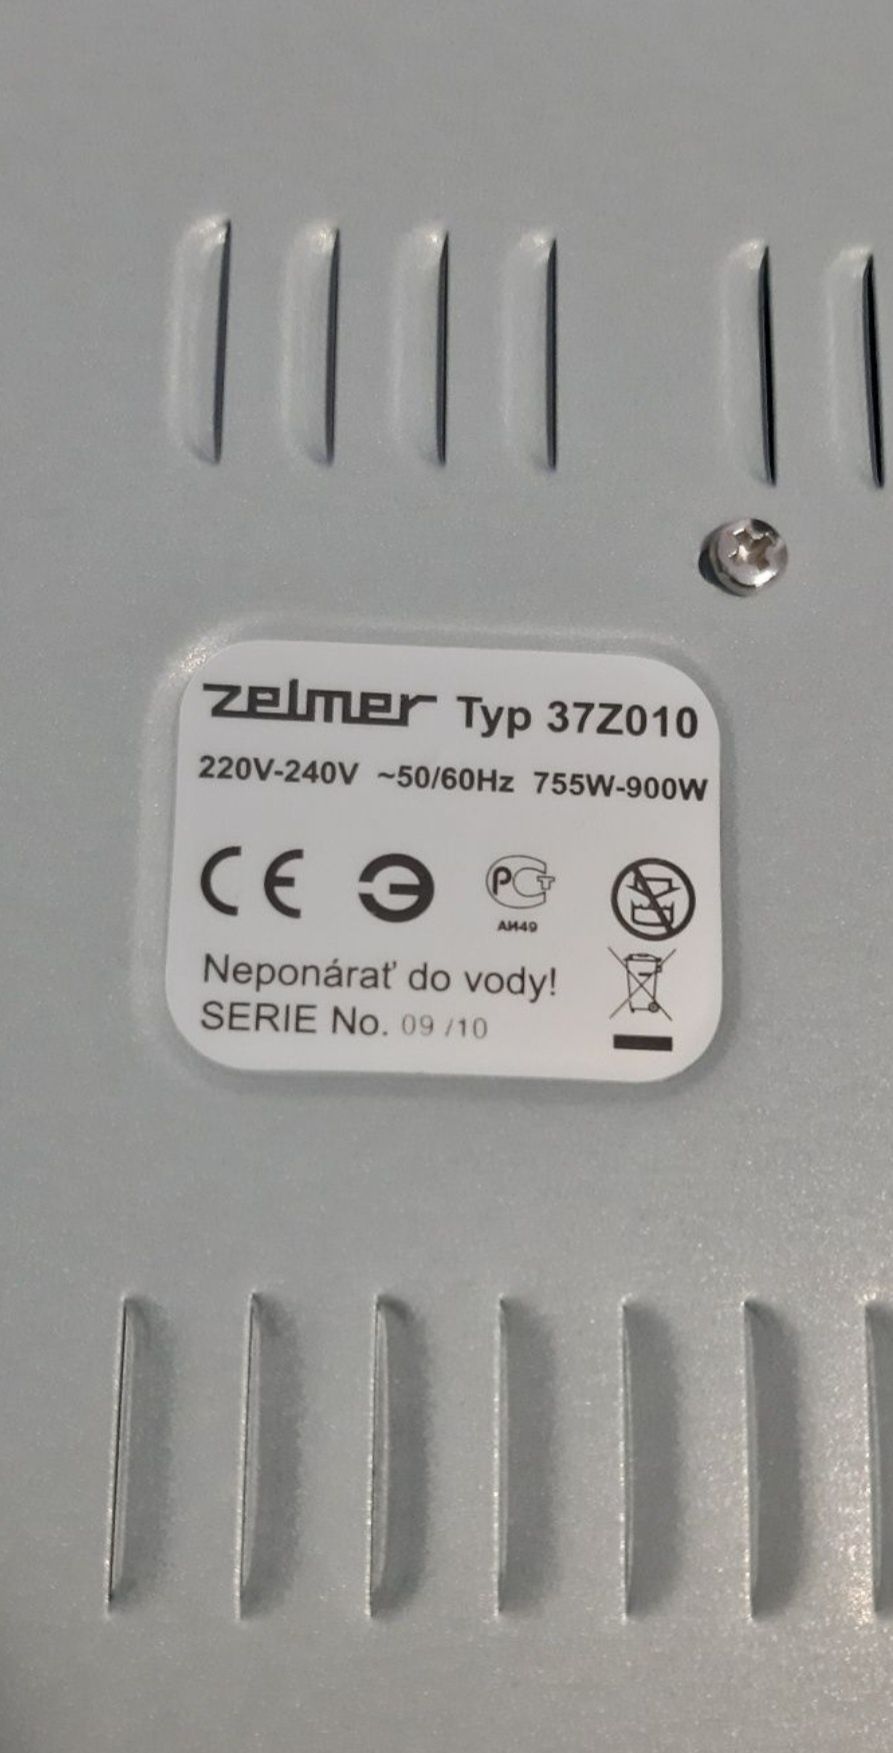 Nowy parowar Zelmer 37Z010